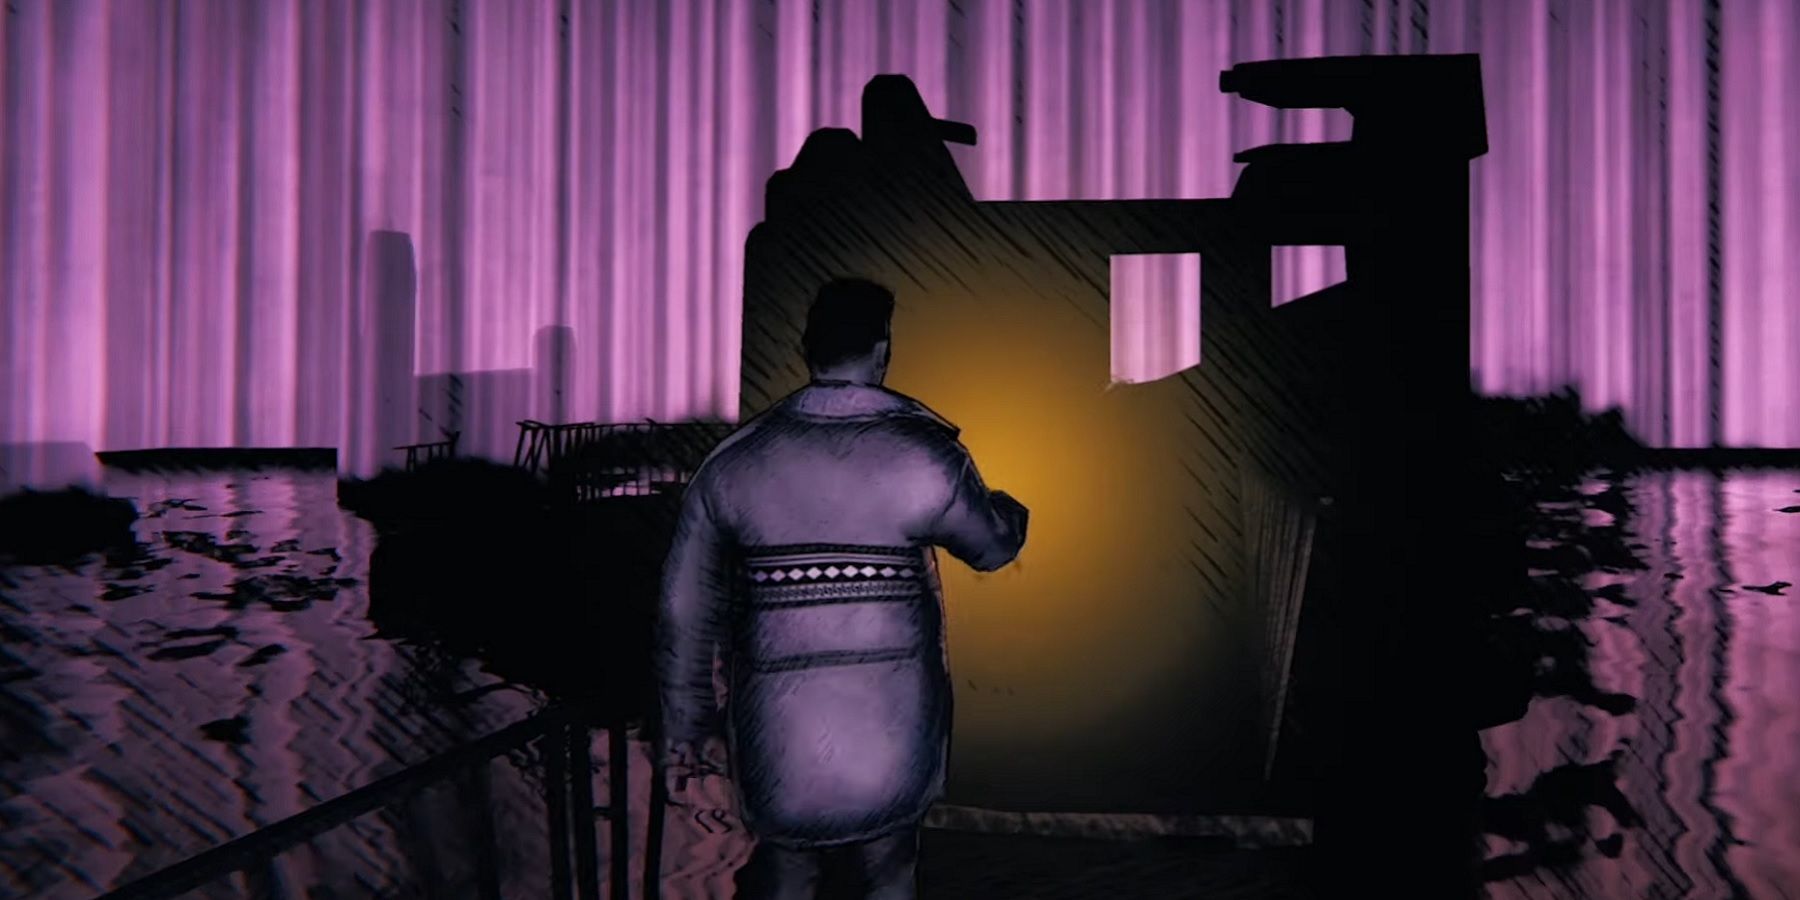 Изображение из инди-игры ужасов Saturnalia, показывающее персонажа, идущего по пурпурному ландшафту.